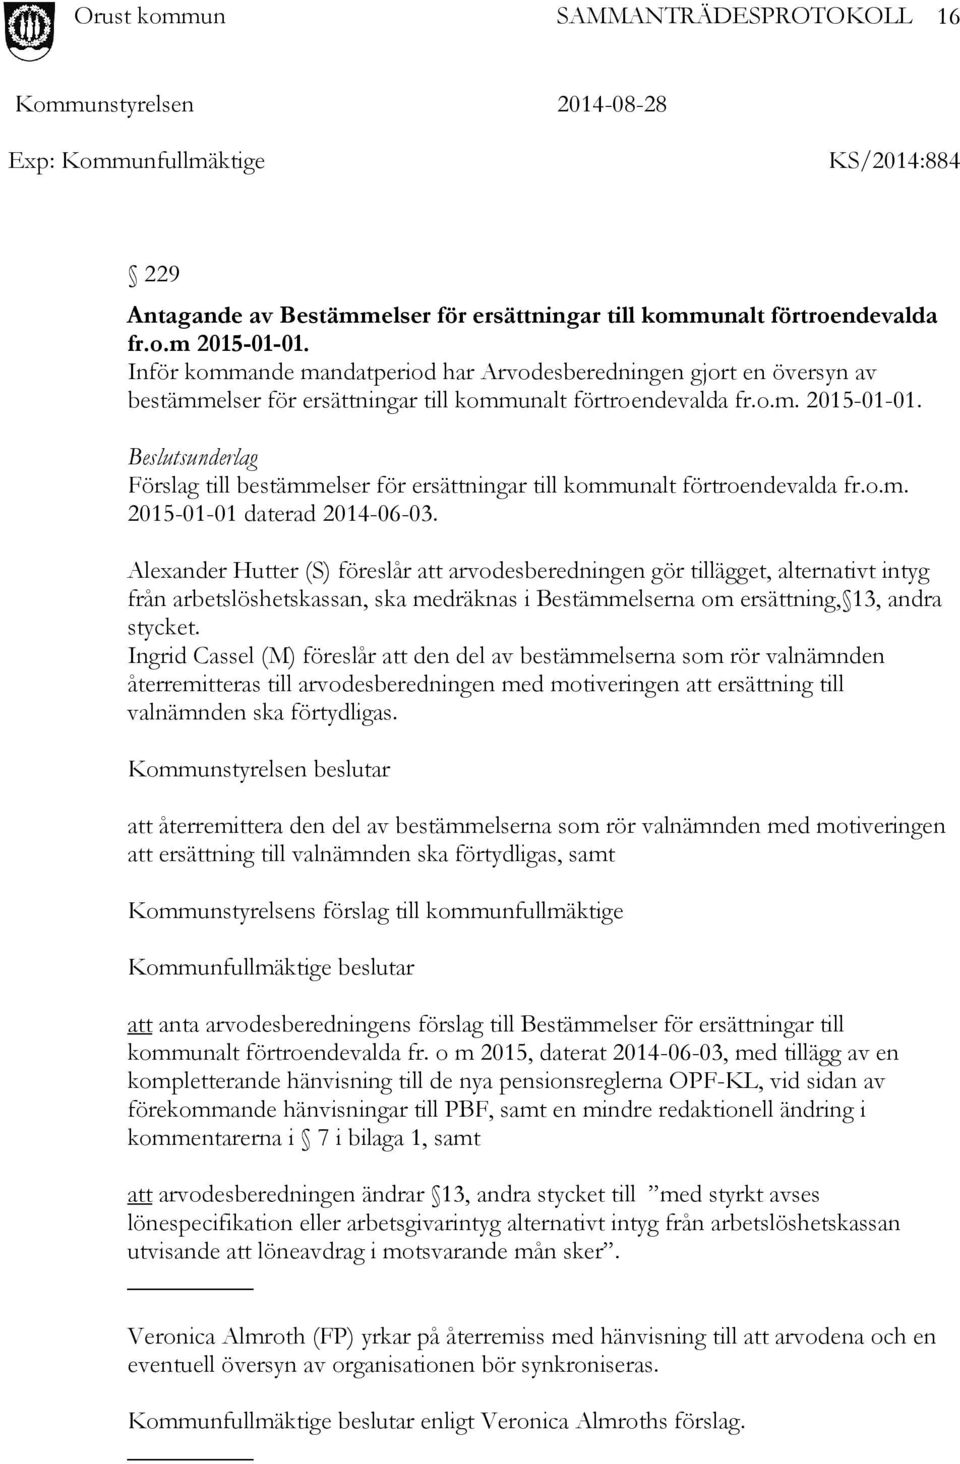 Beslutsunderlag Förslag till bestämmelser för ersättningar till kommunalt förtroendevalda fr.o.m. 2015-01-01 daterad 2014-06-03.